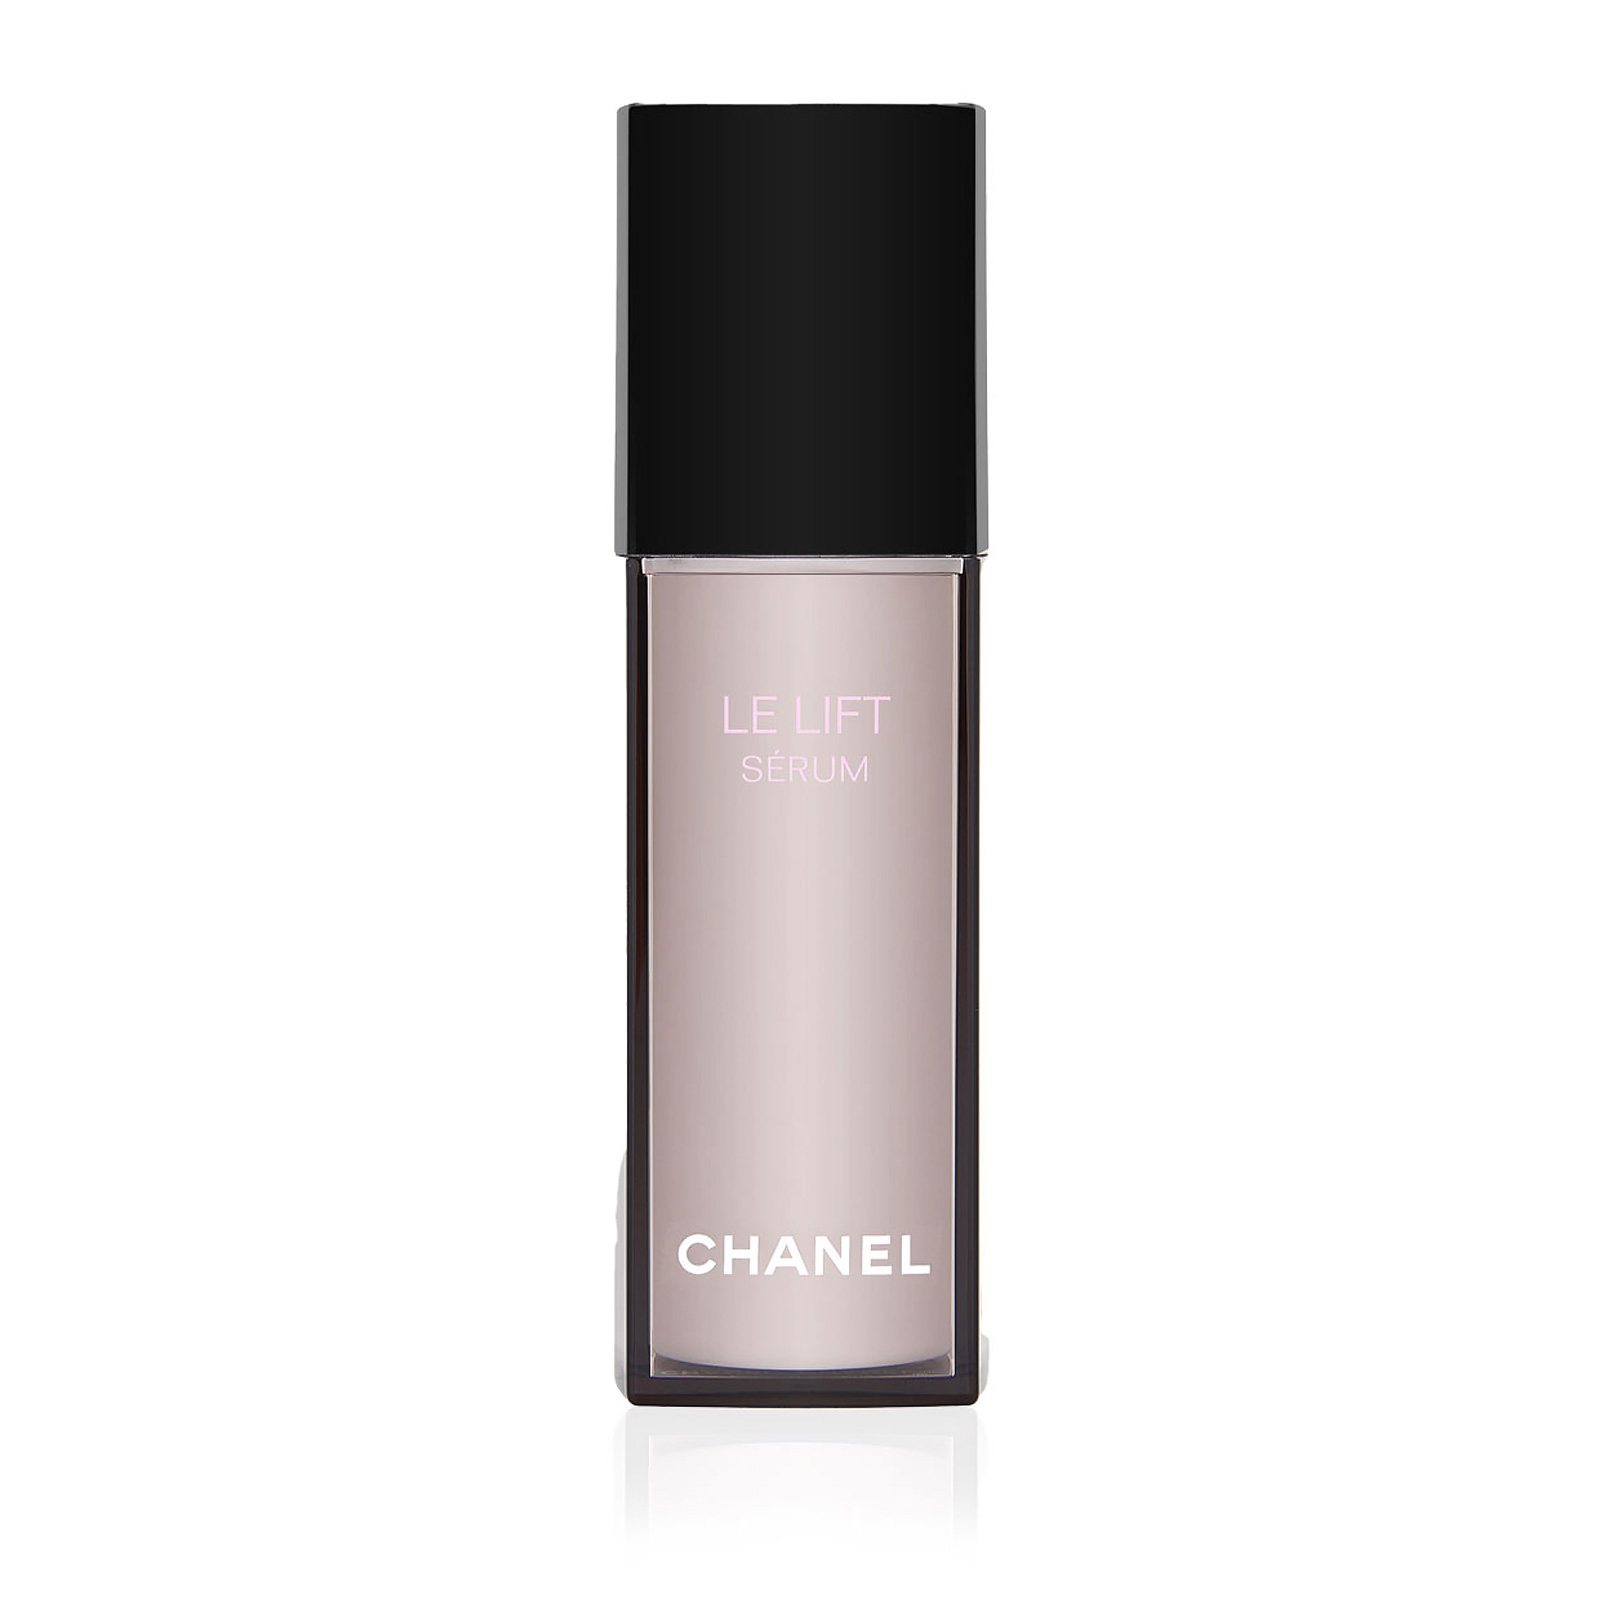 Chanel Le Lift Serum50 ml 1.7 oz AKB Beauty